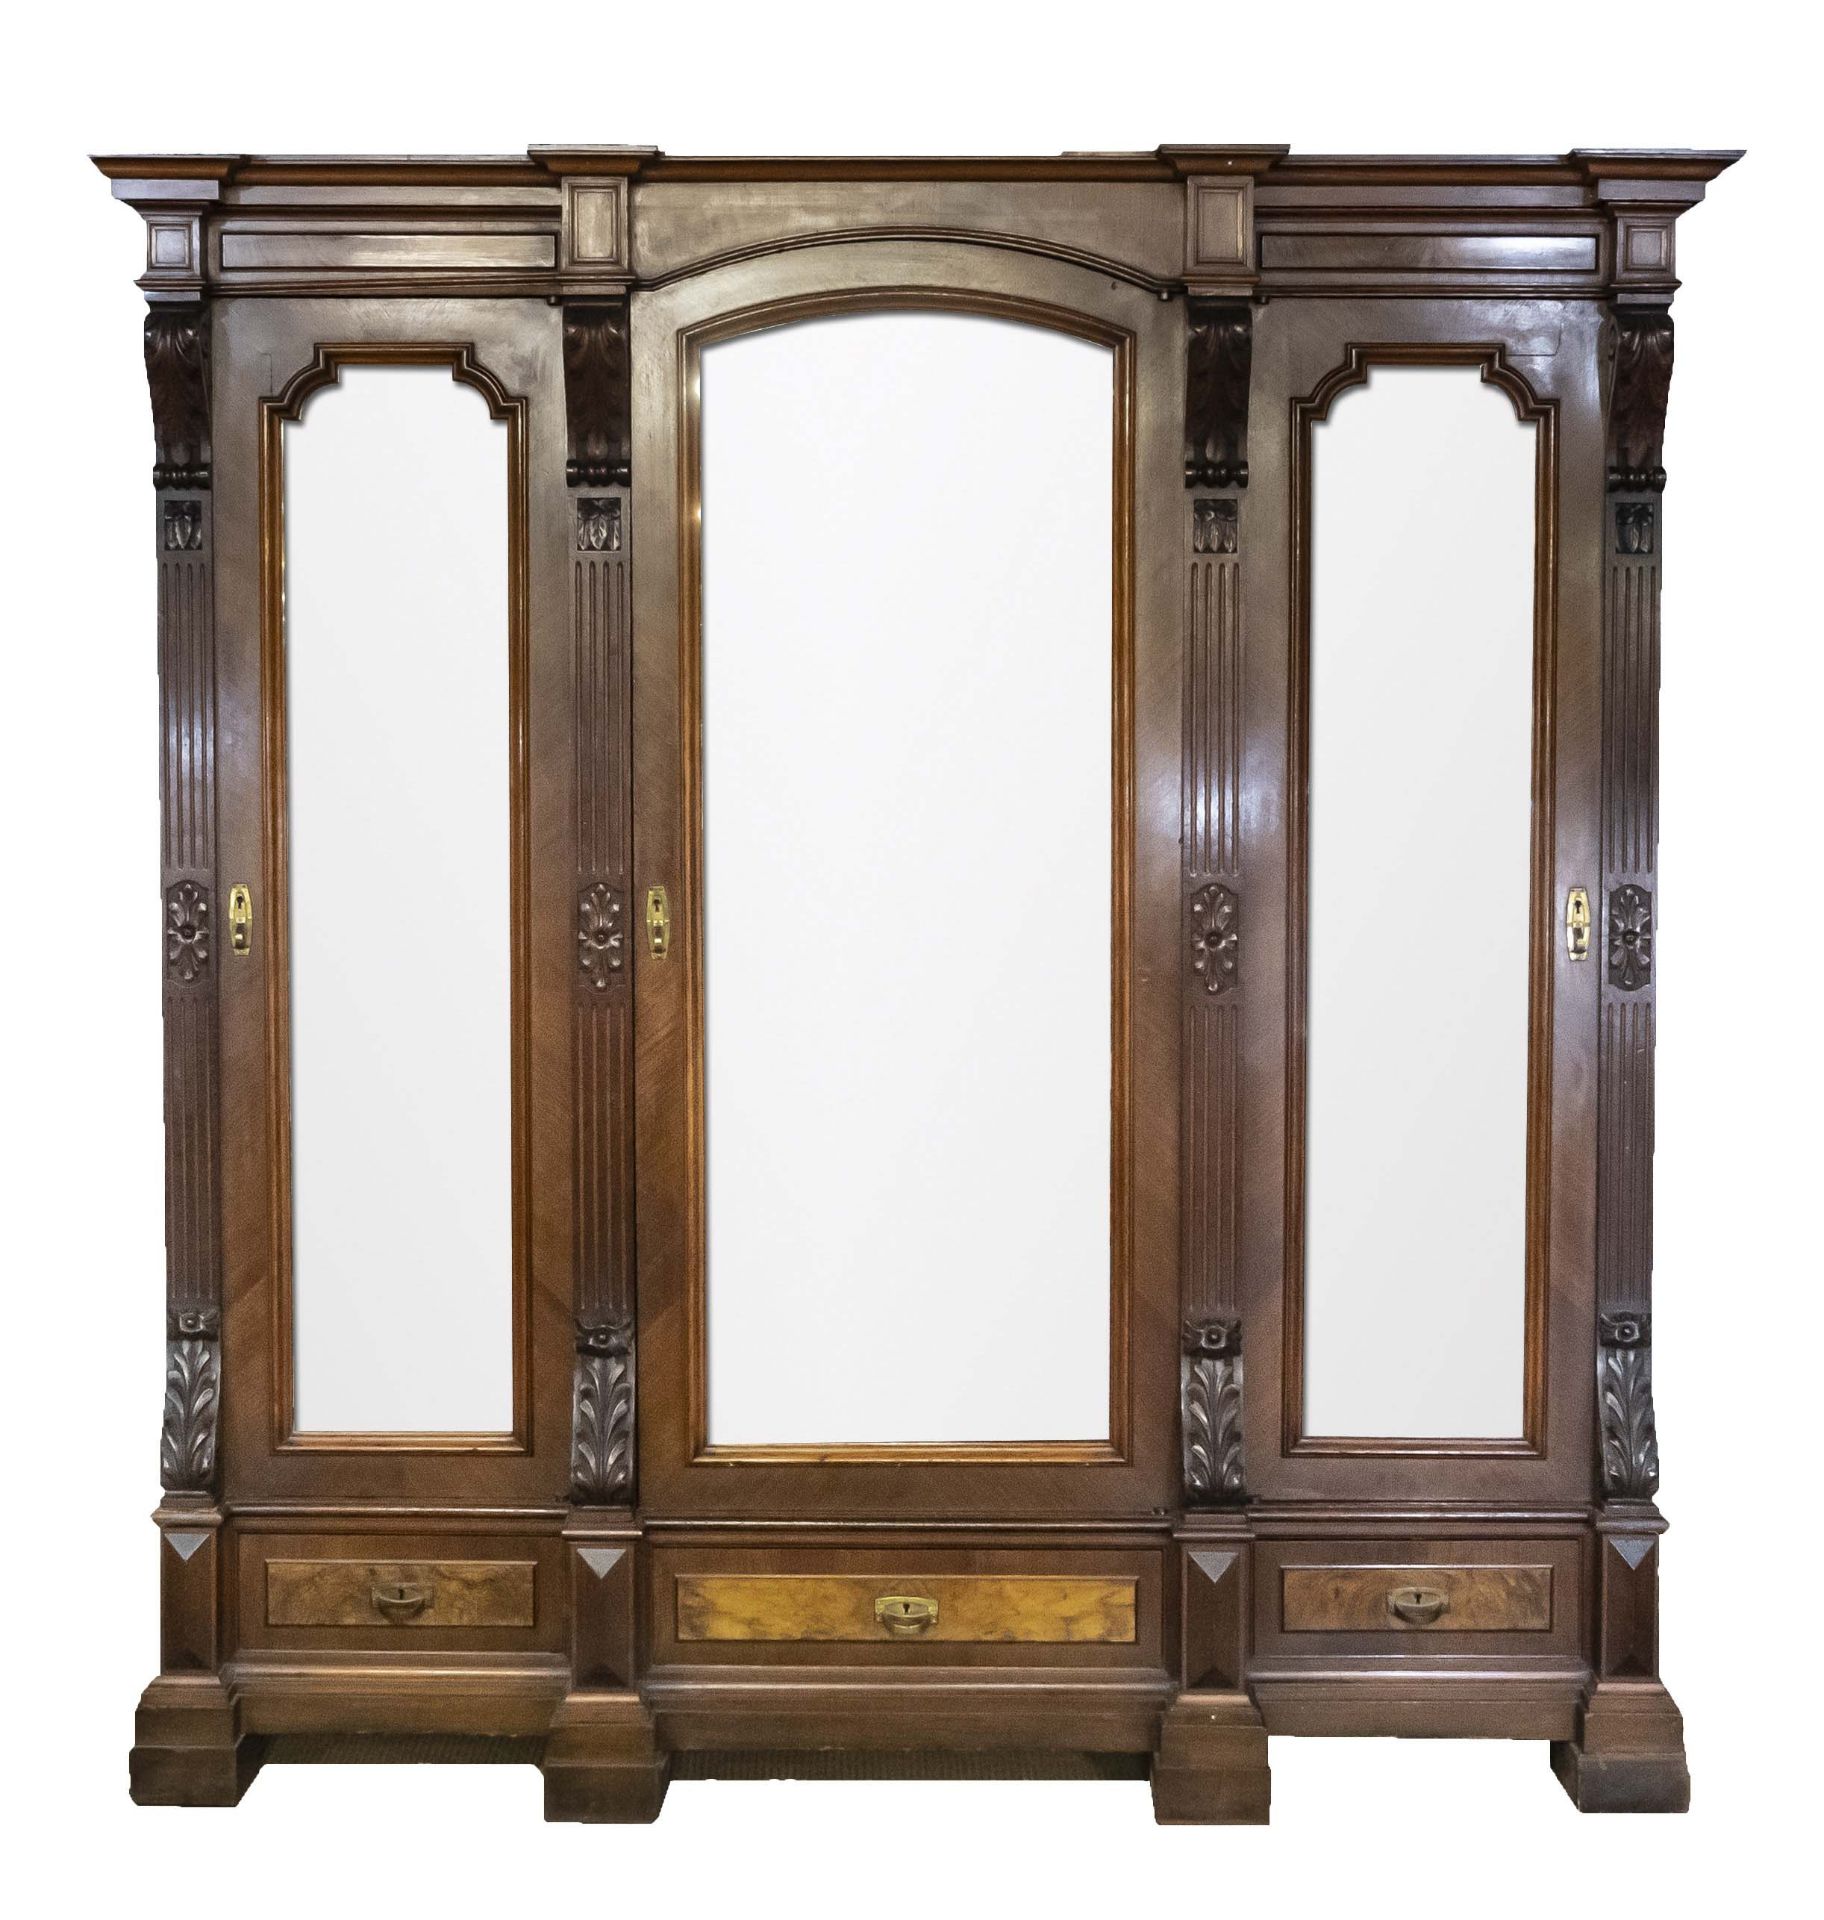 Wilhelminian style closet from around 1880, walnut veneered, 3-door mirrored body, coffered sides,